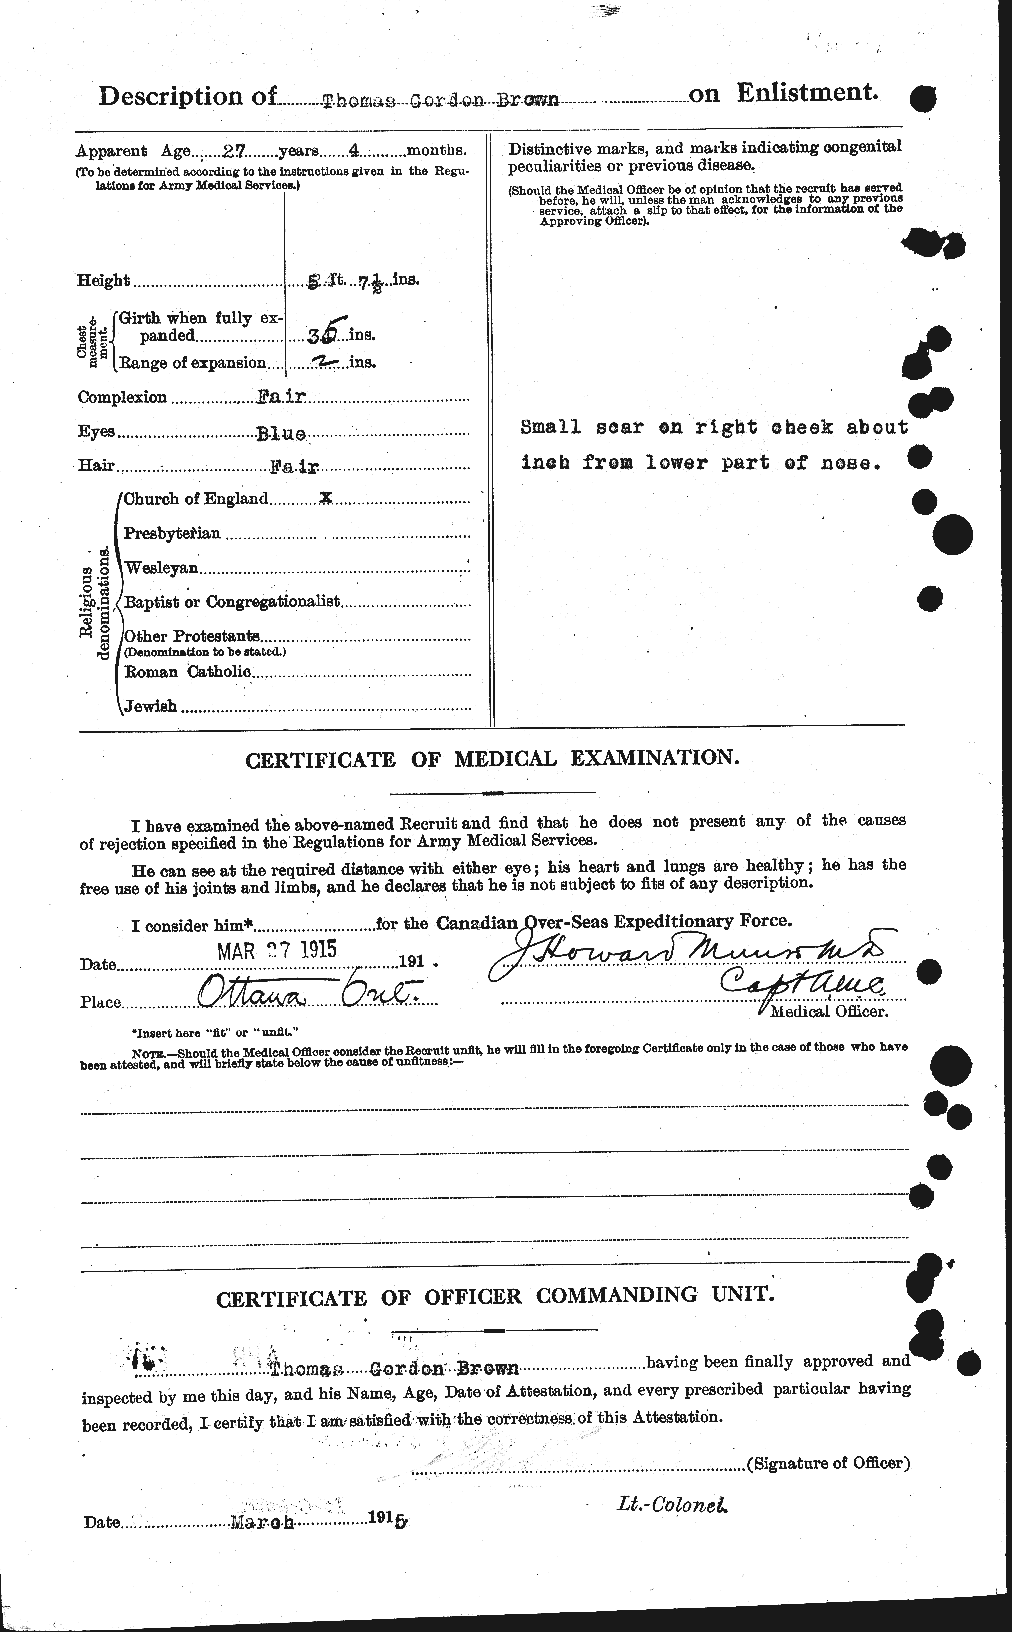 Dossiers du Personnel de la Première Guerre mondiale - CEC 266552b